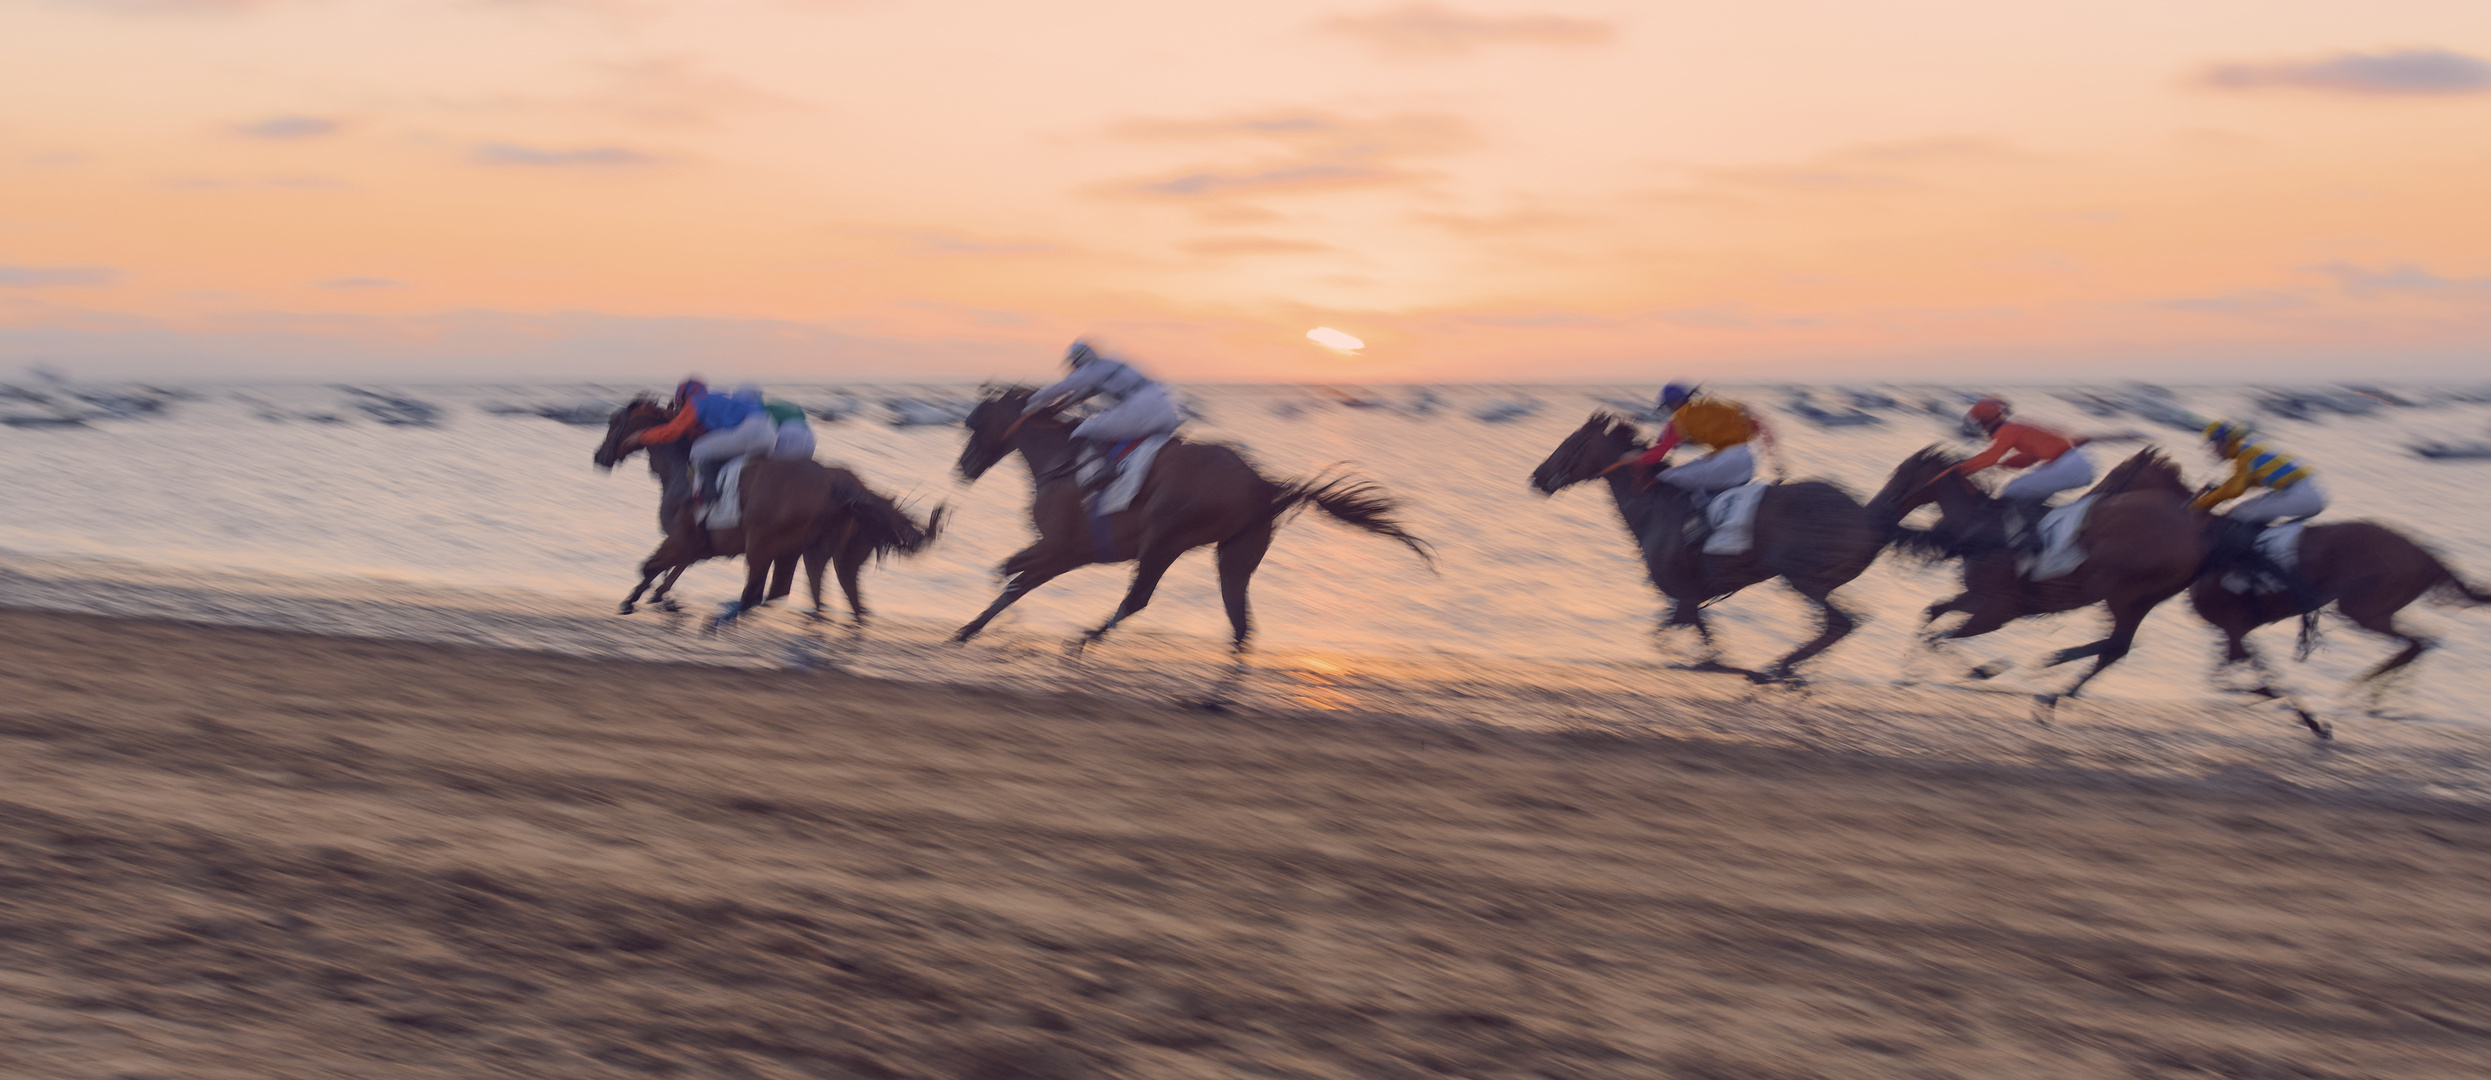 Carreras de caballos en Sanlúcar de Barrameda - España